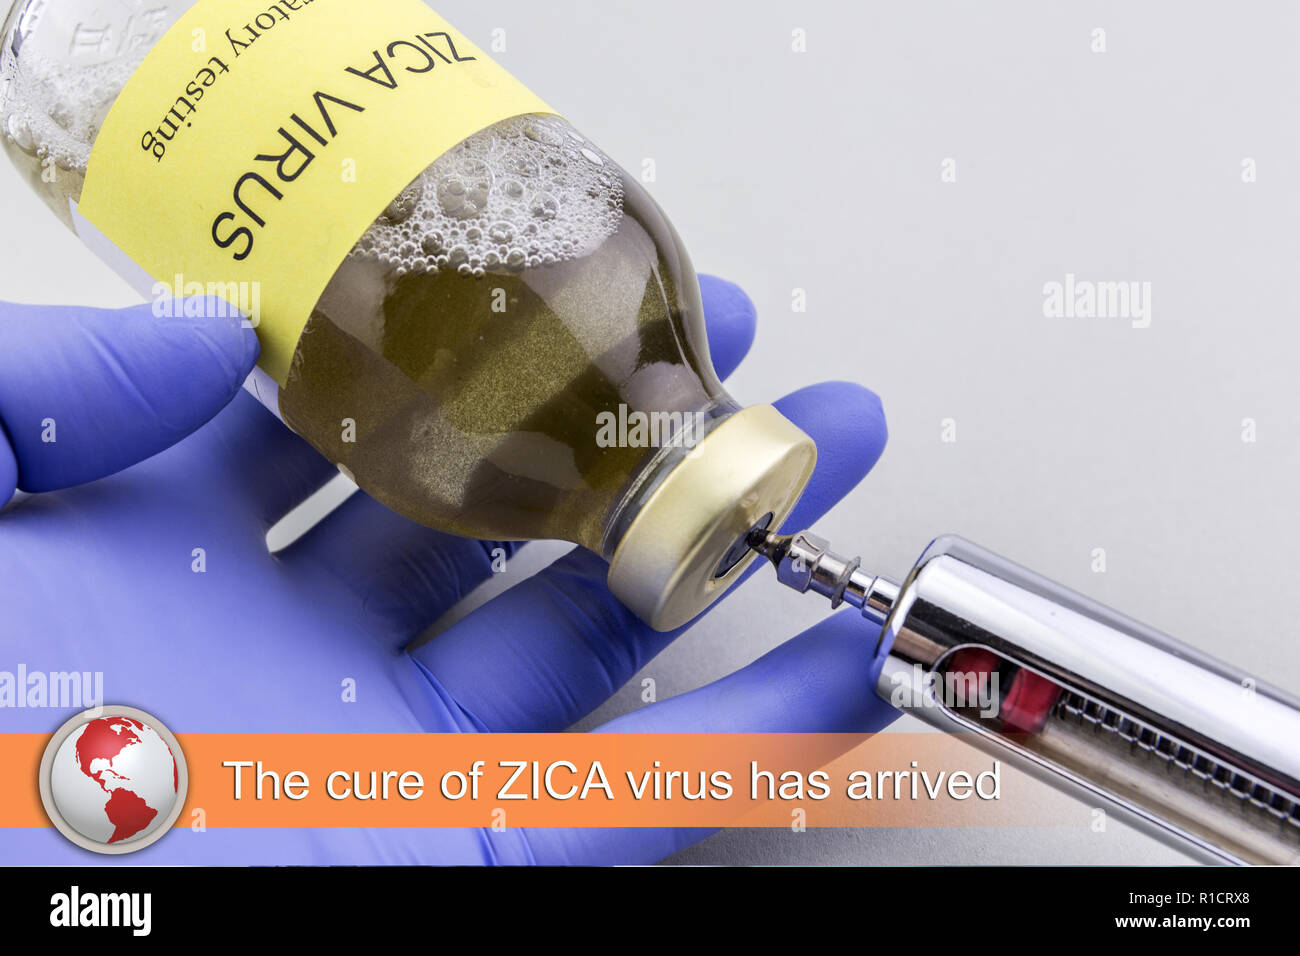 Digital composite de flash avec l'imagerie médicale, la cure fo virus zica est arrivé Banque D'Images